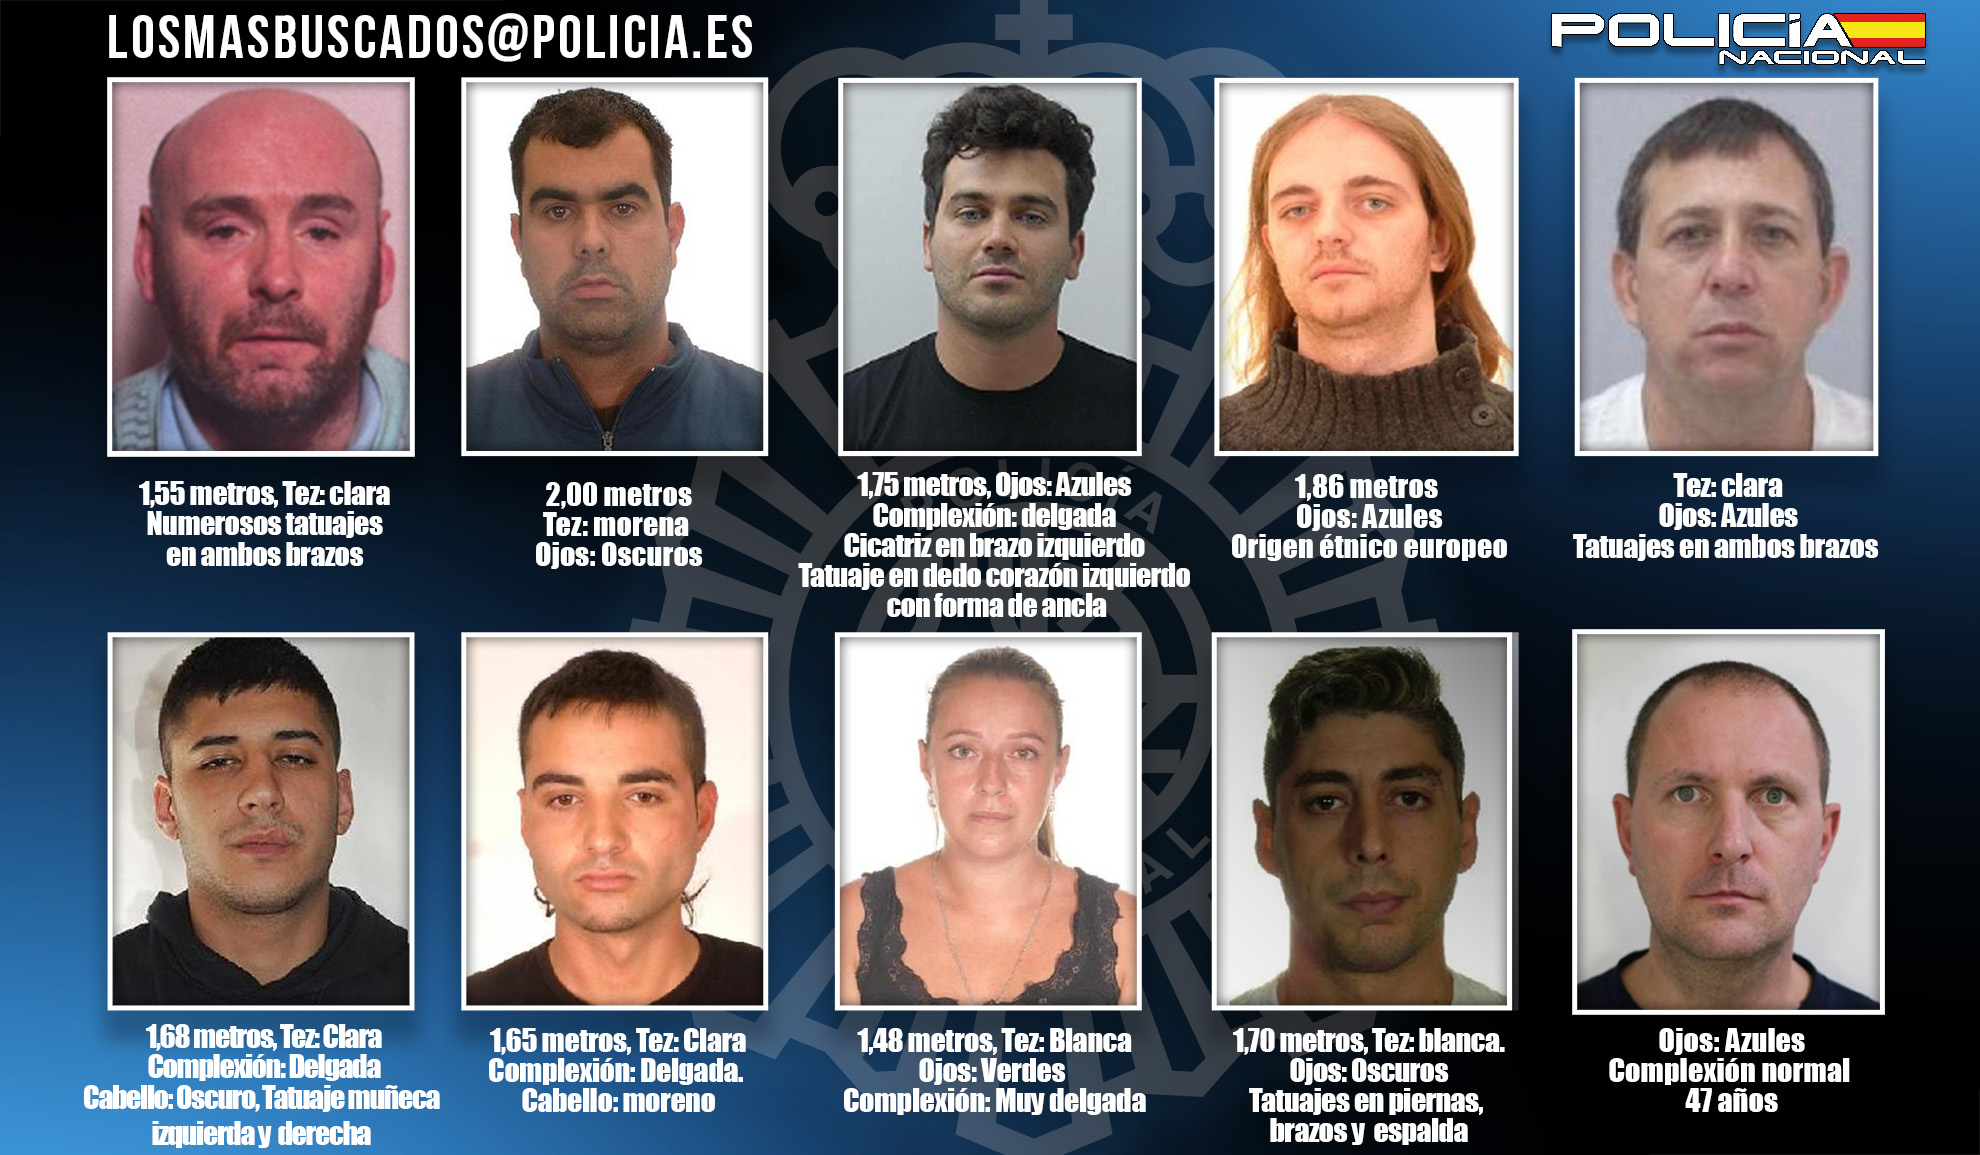 Cartel coas fotografías do dez fugitivos máis buscados